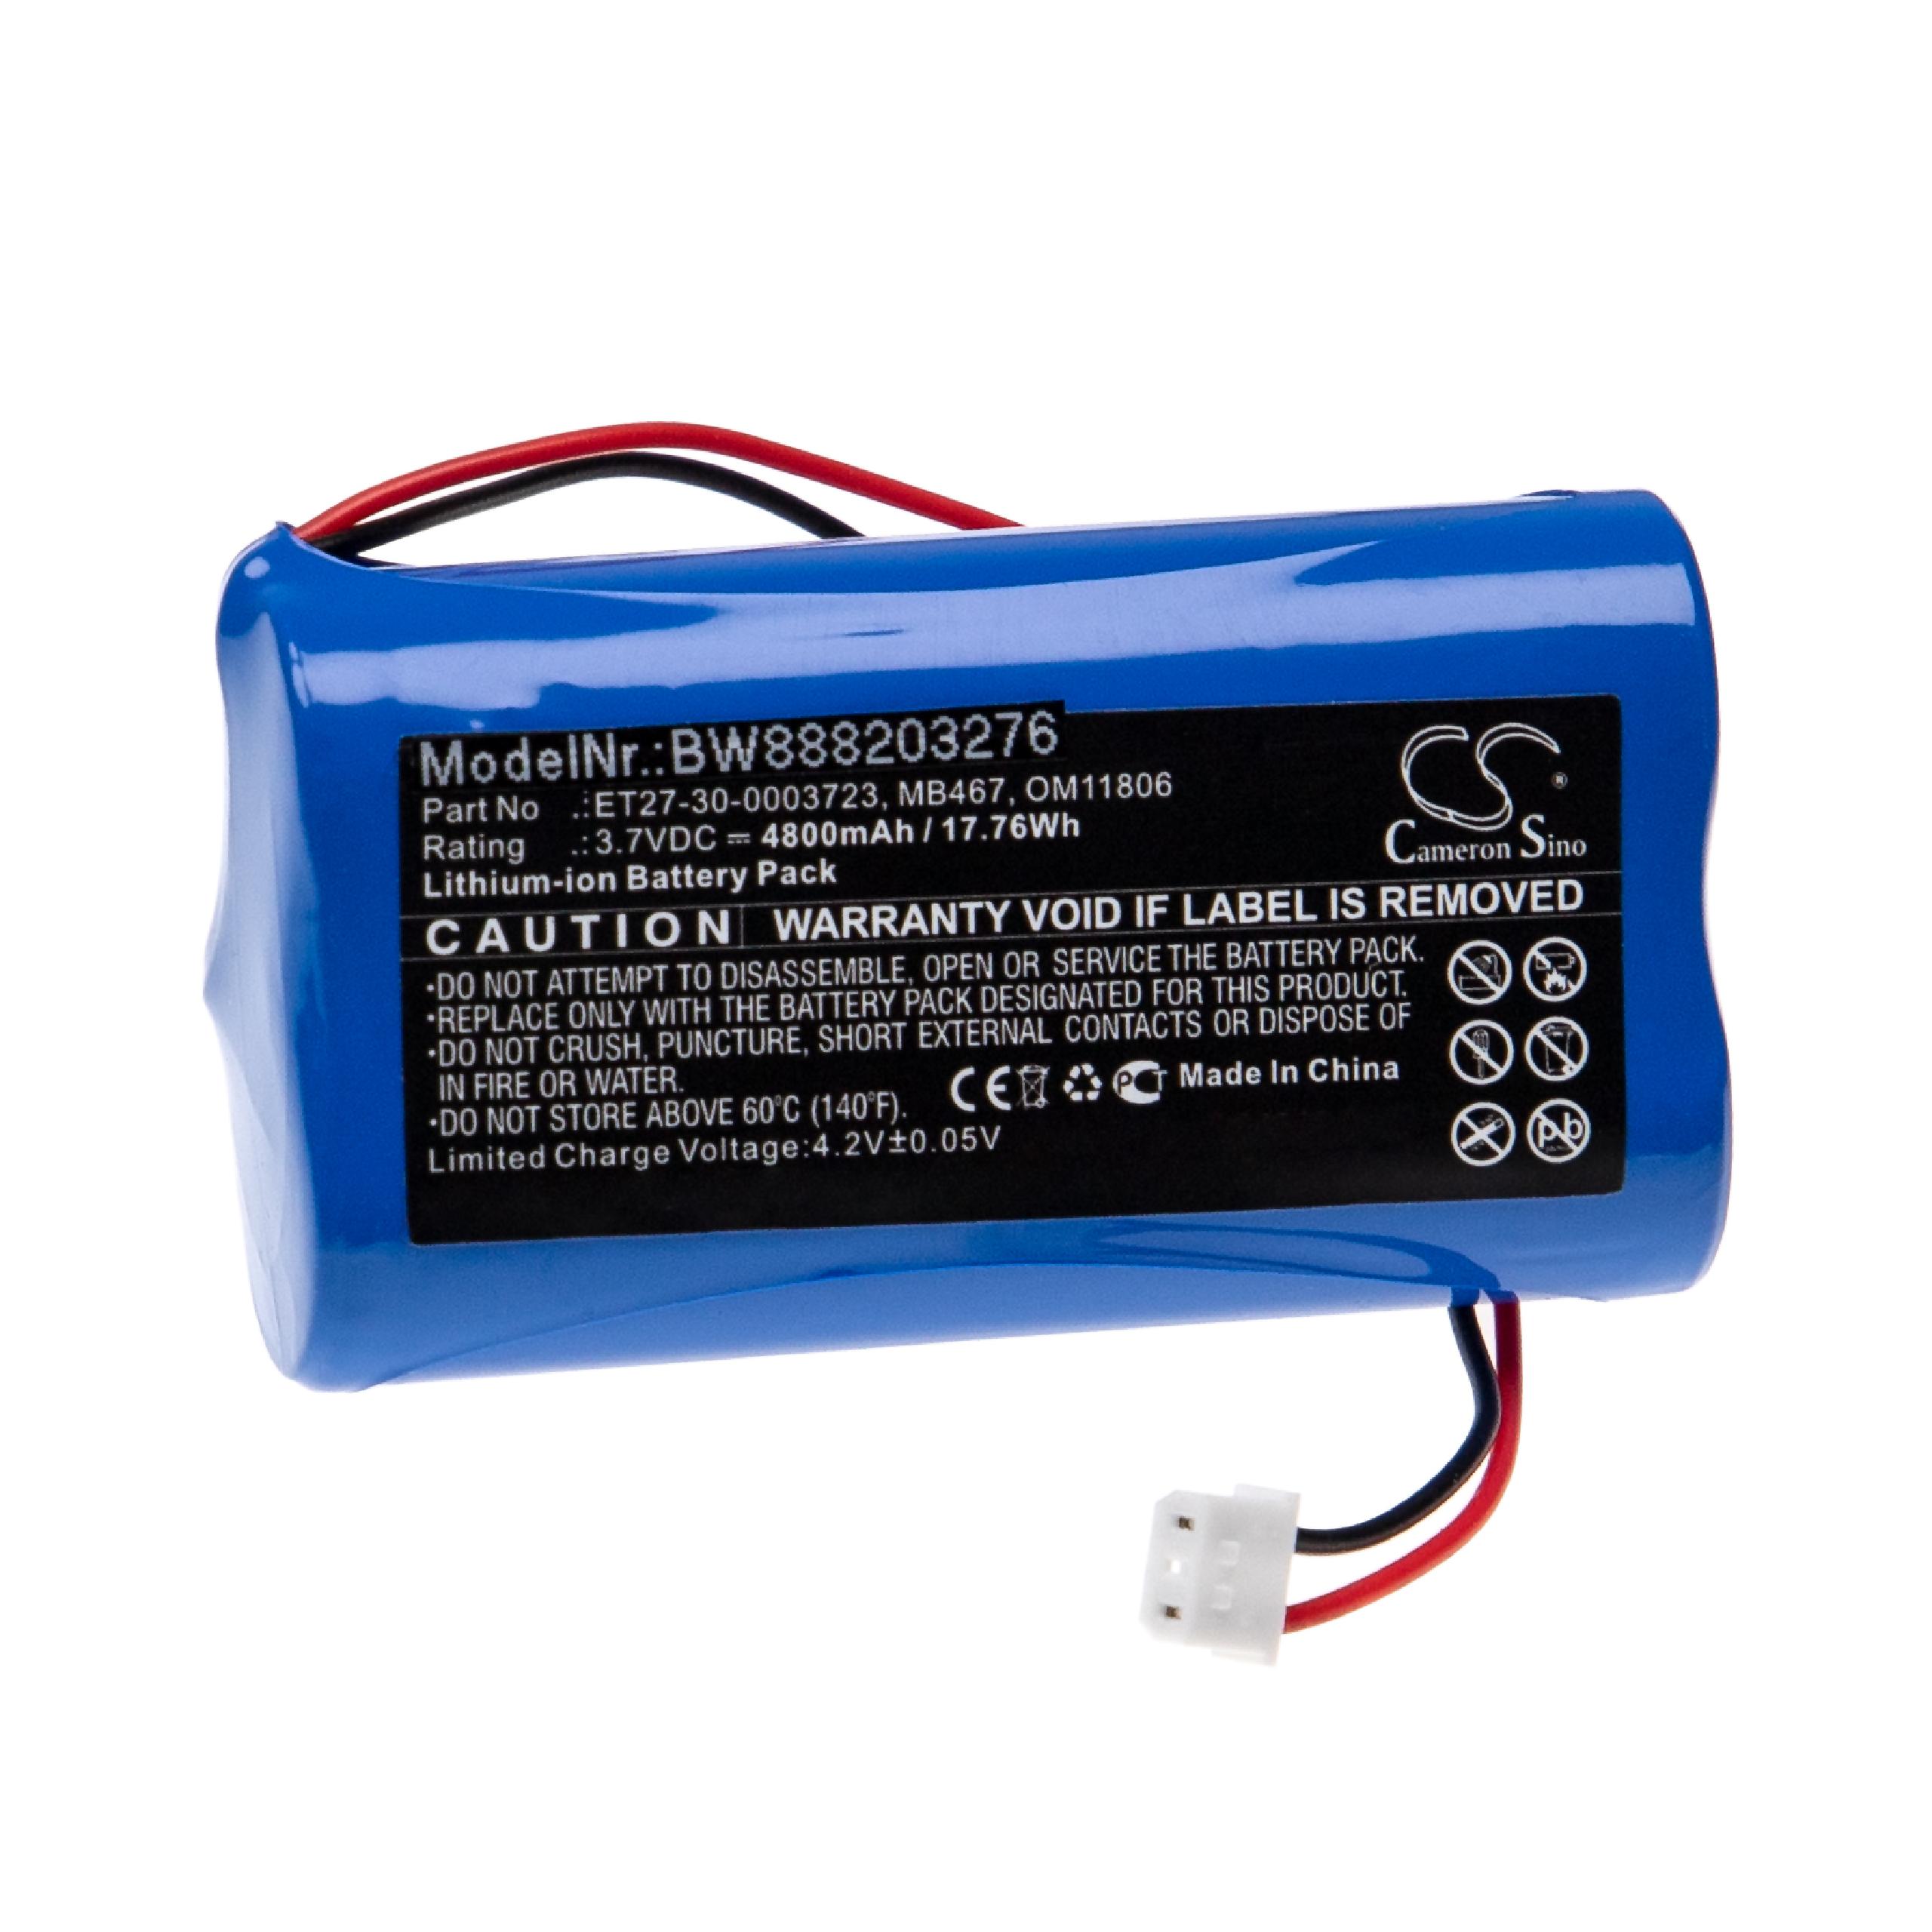 Batterie remplace Karl Storz MB467, ET27-30-0003723, 30.0003 pour appareil médical - 4800mAh 3,7V Li-ion